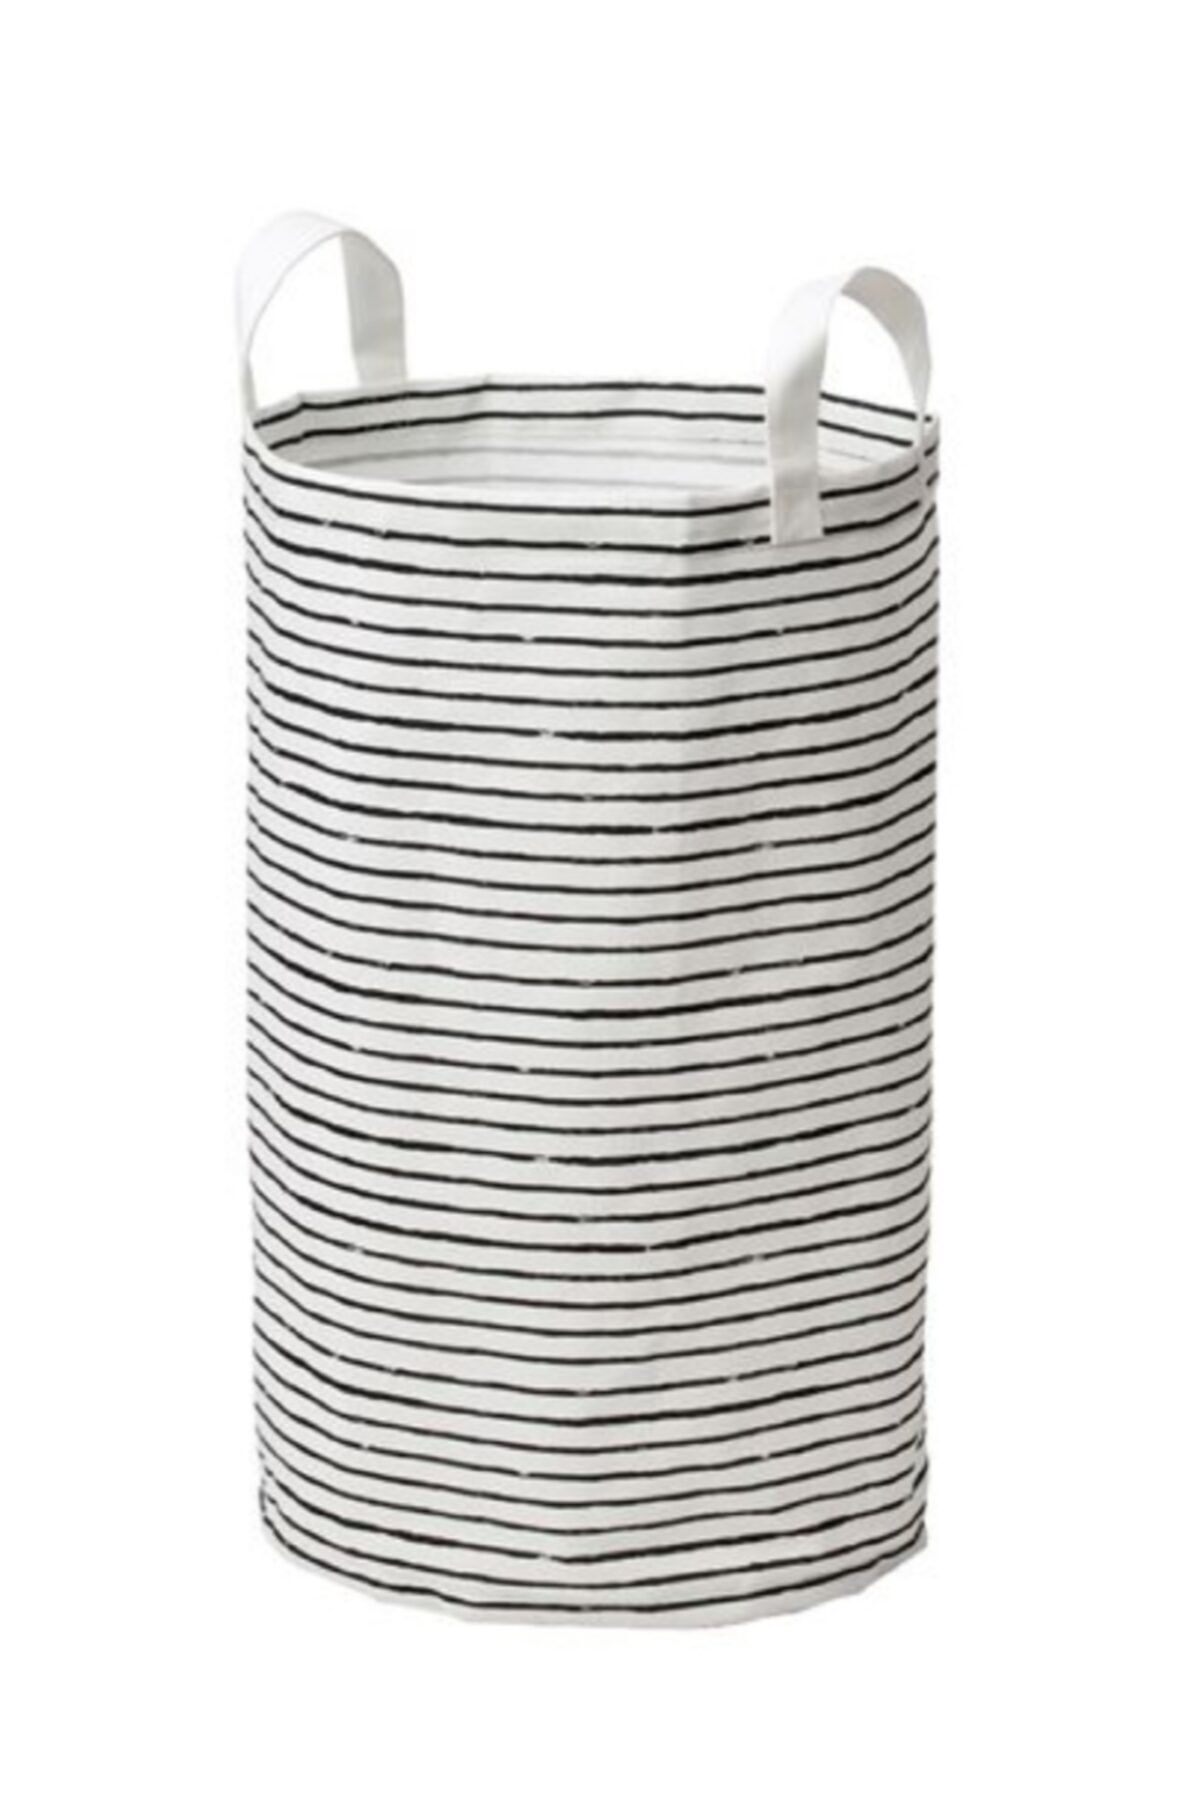 IKEA Oyuncak Ve Çamaşır Torbası, Ikea Sepet 60 cm